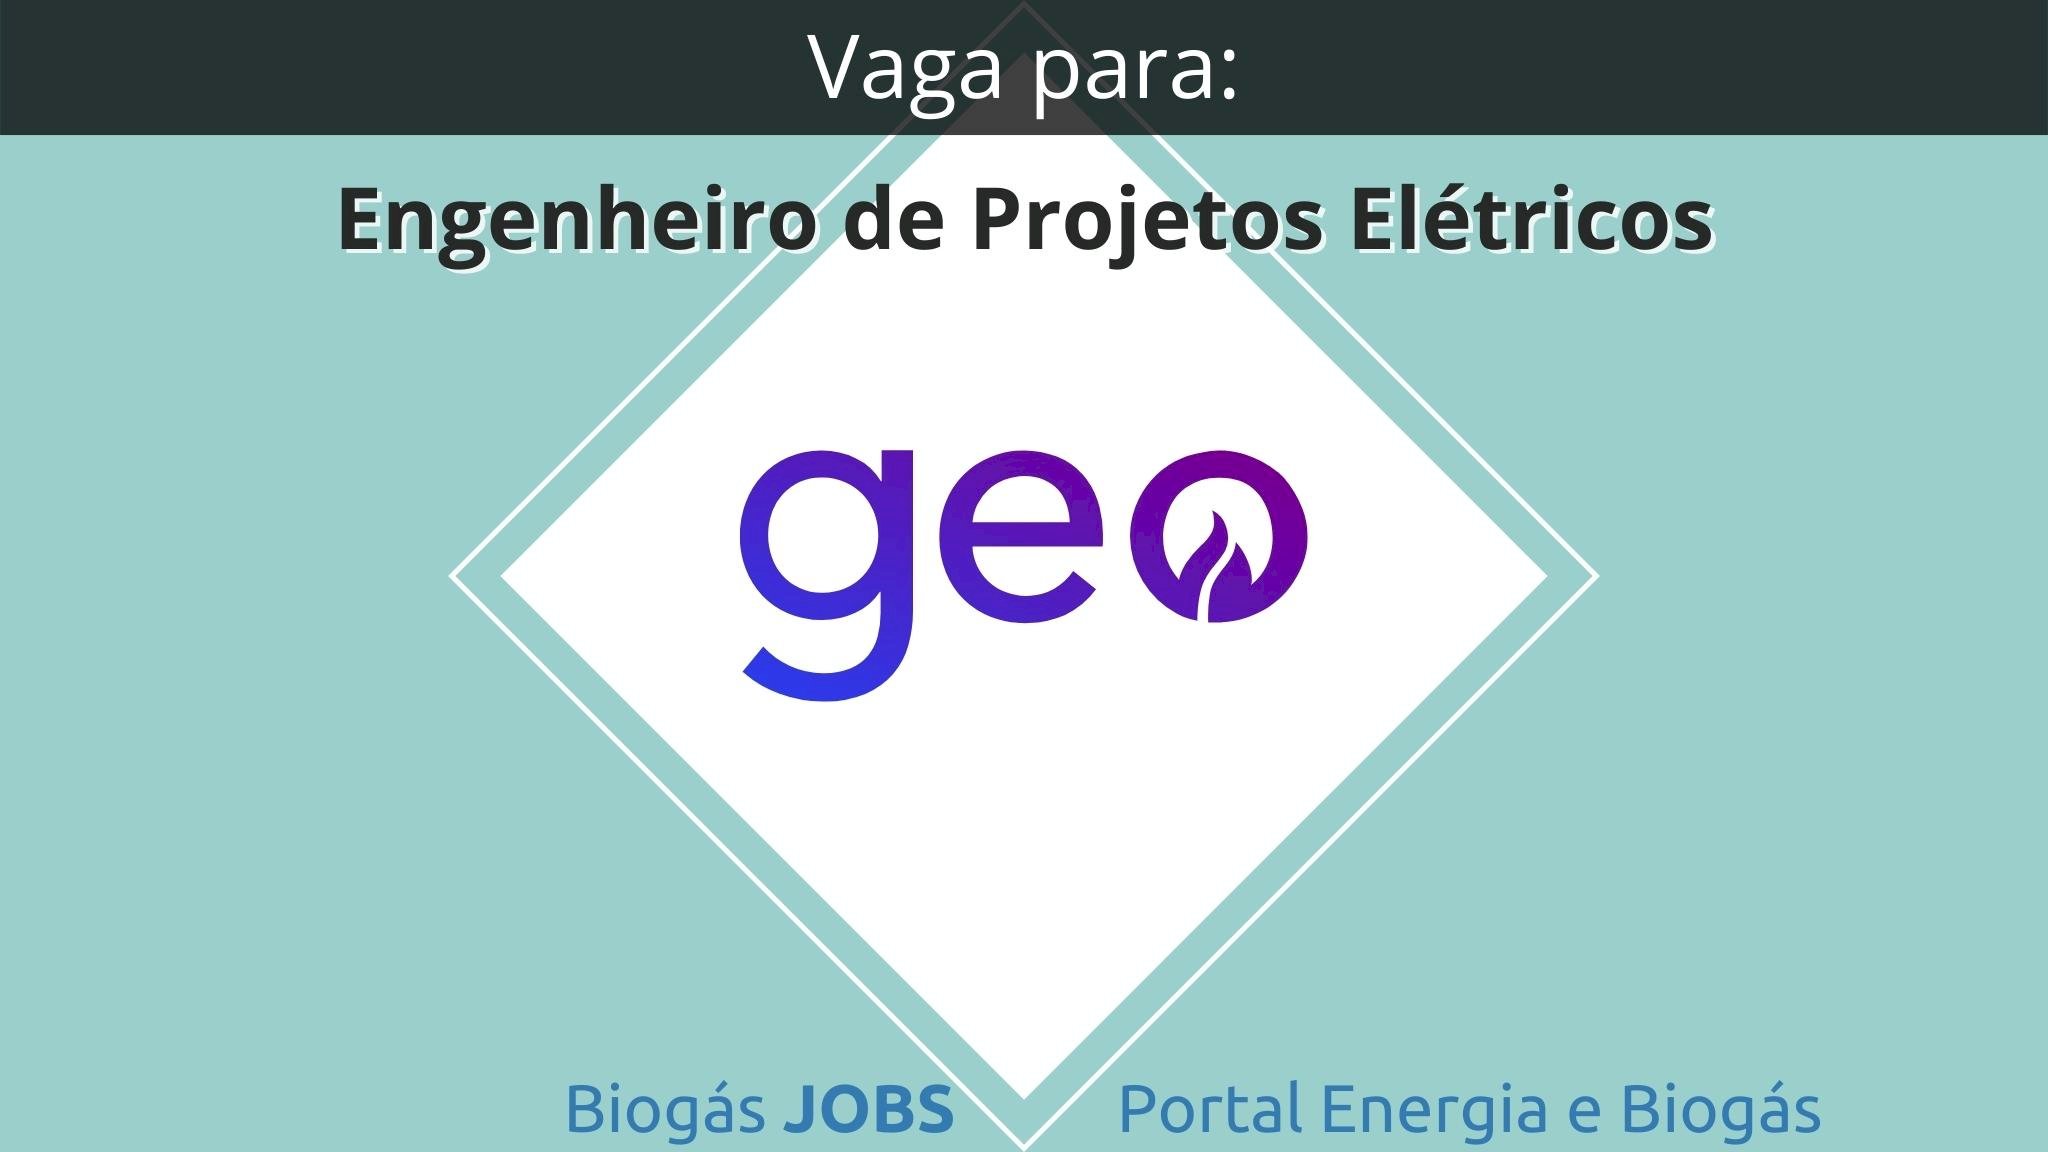 Vaga para Engenheiro(a) de Projetos Elétricos